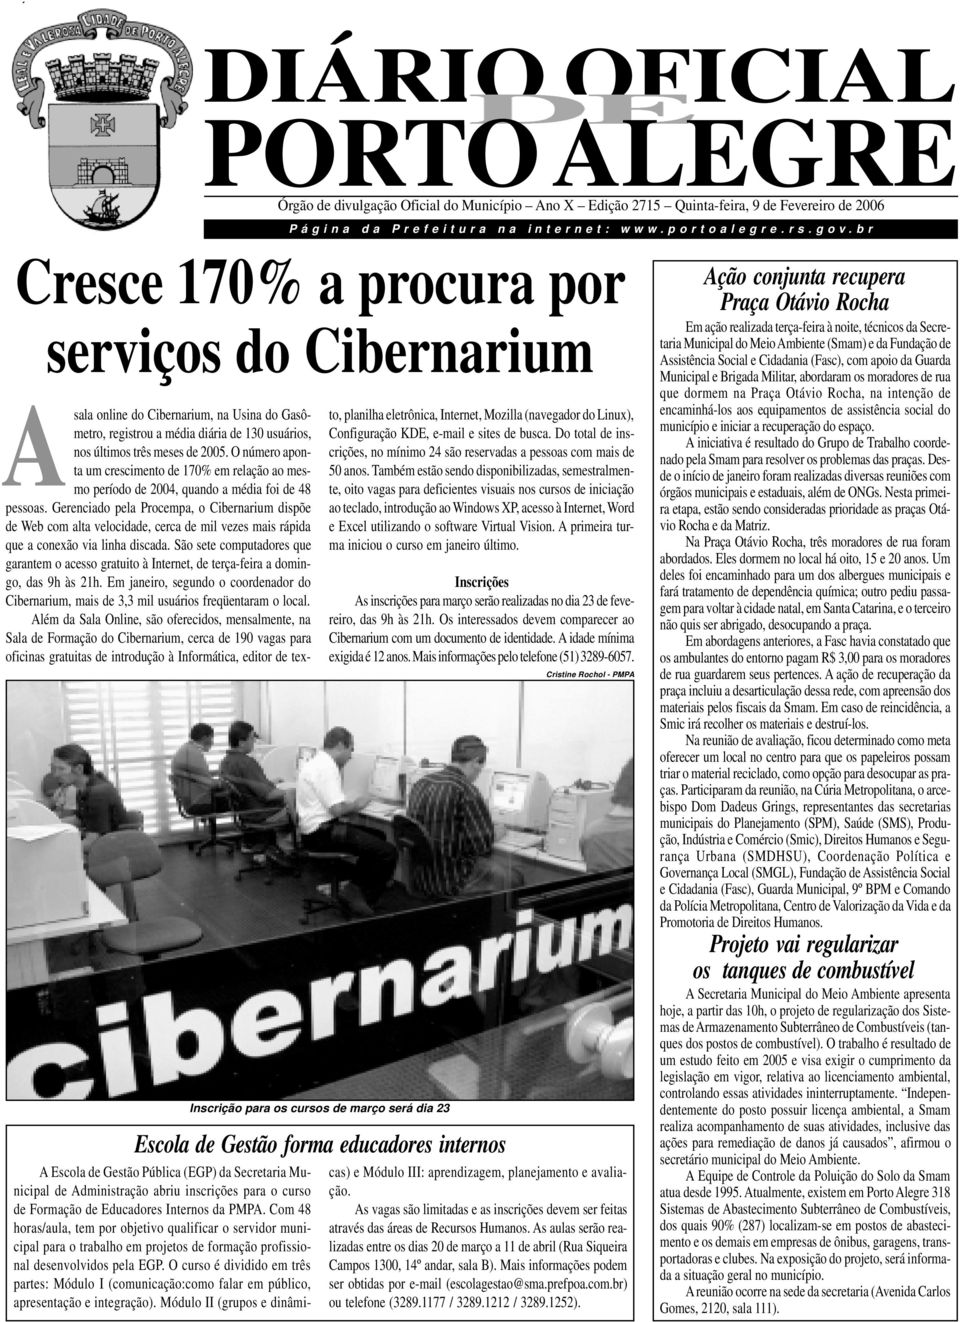 br Cresce 170% procur por serviços do Cibernrium Asl online do Cibernrium, n Usin do Gsômetro, registrou médi diári de 130 usuários, nos últimos três meses de 2005.